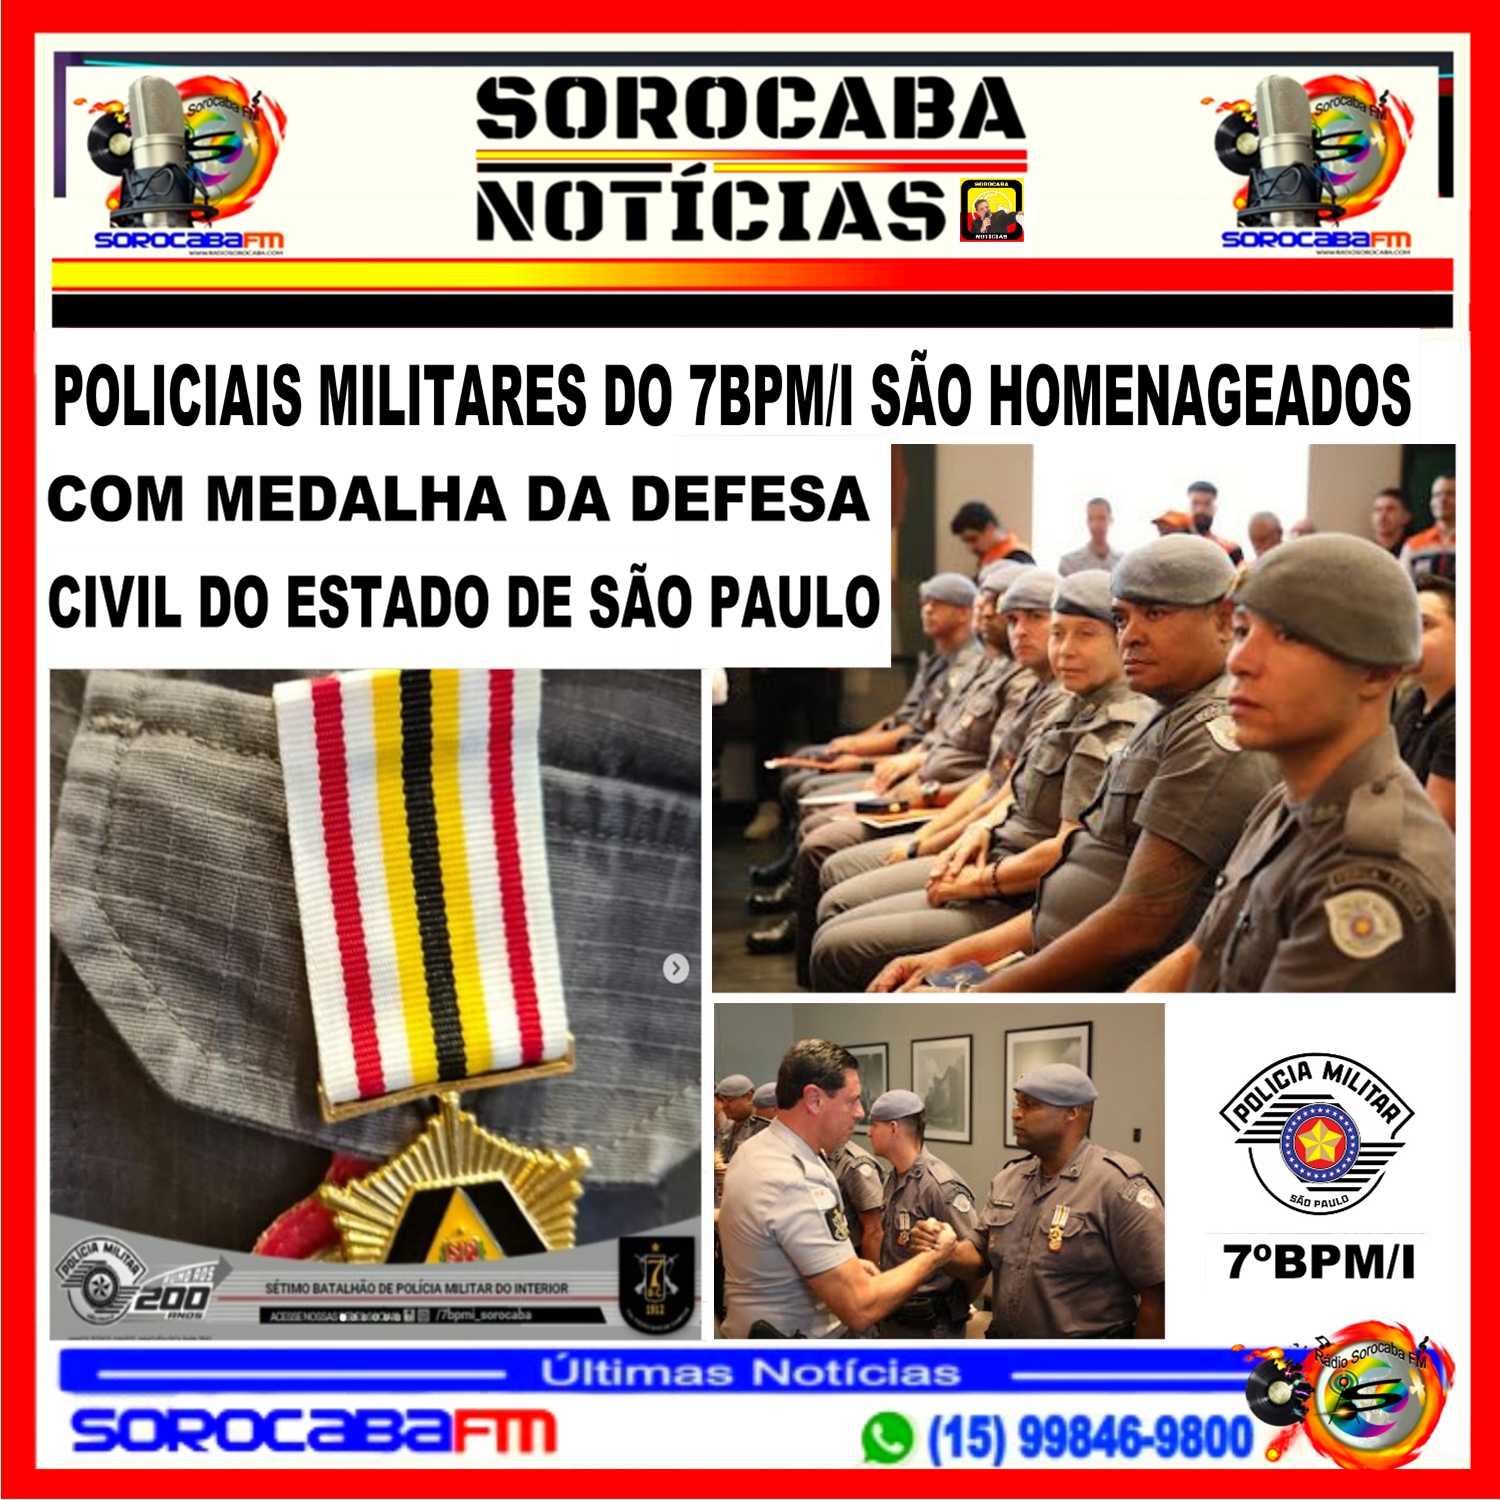 POLICIAIS MILITARES DO 7BPM/I SÃO HOMENAGEADOS COM MEDALHA DA DEFESA CIVIL DO ESTADO DE SÃO PAULO